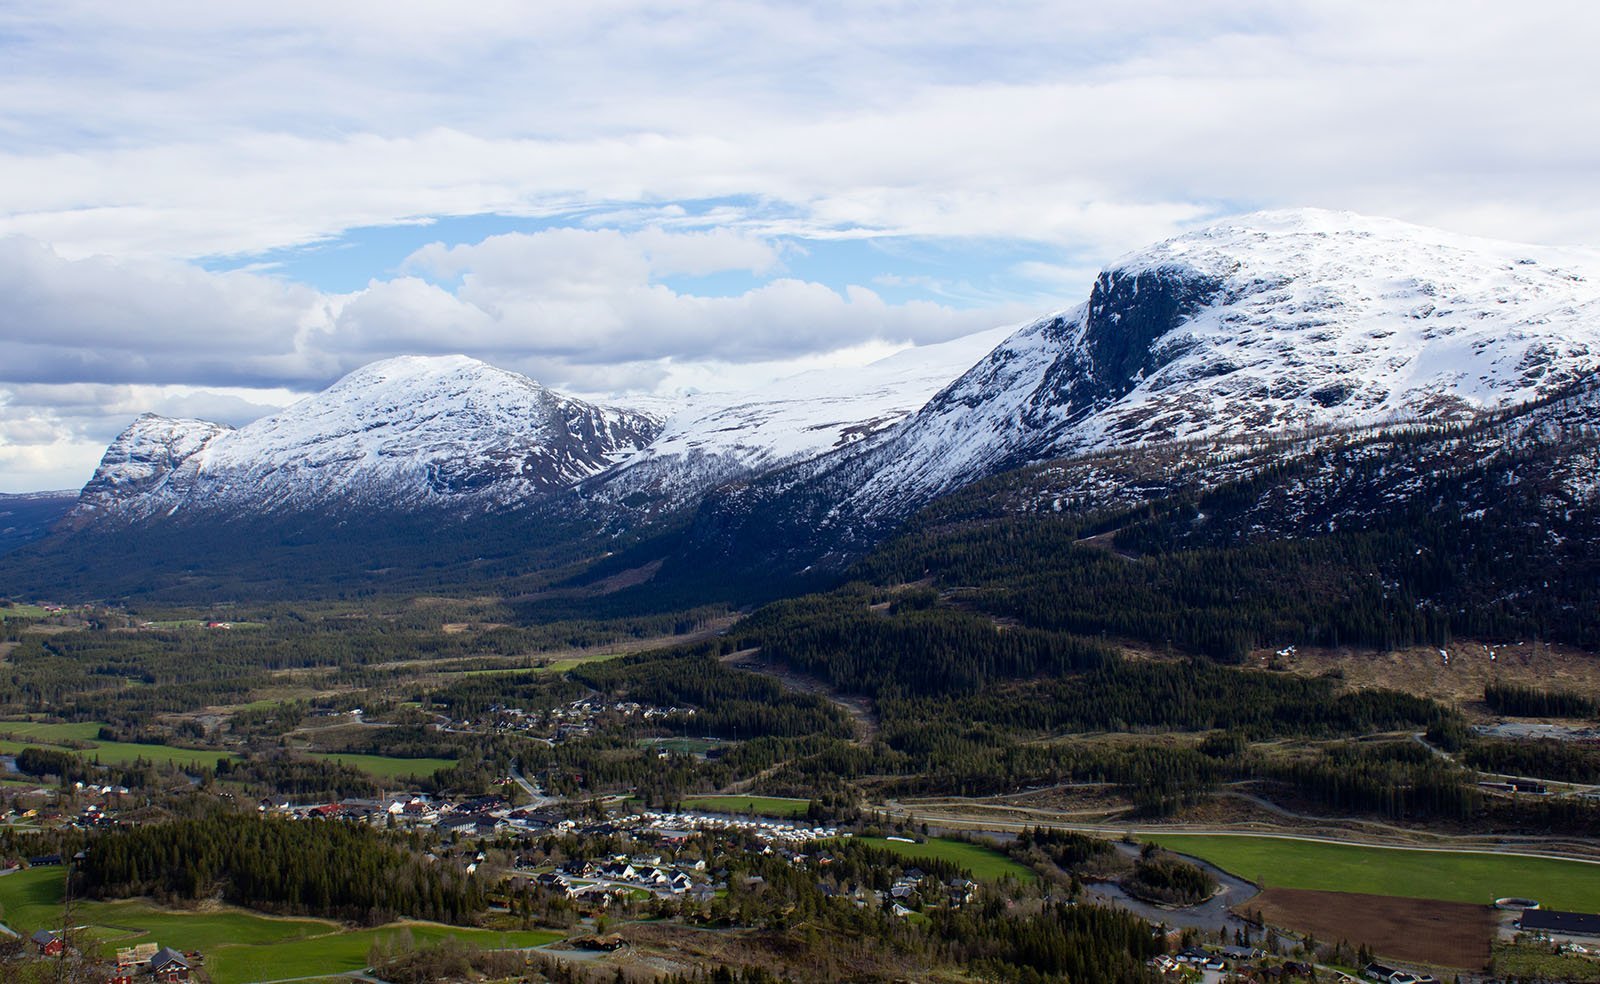 Hemsedal valley in Norway